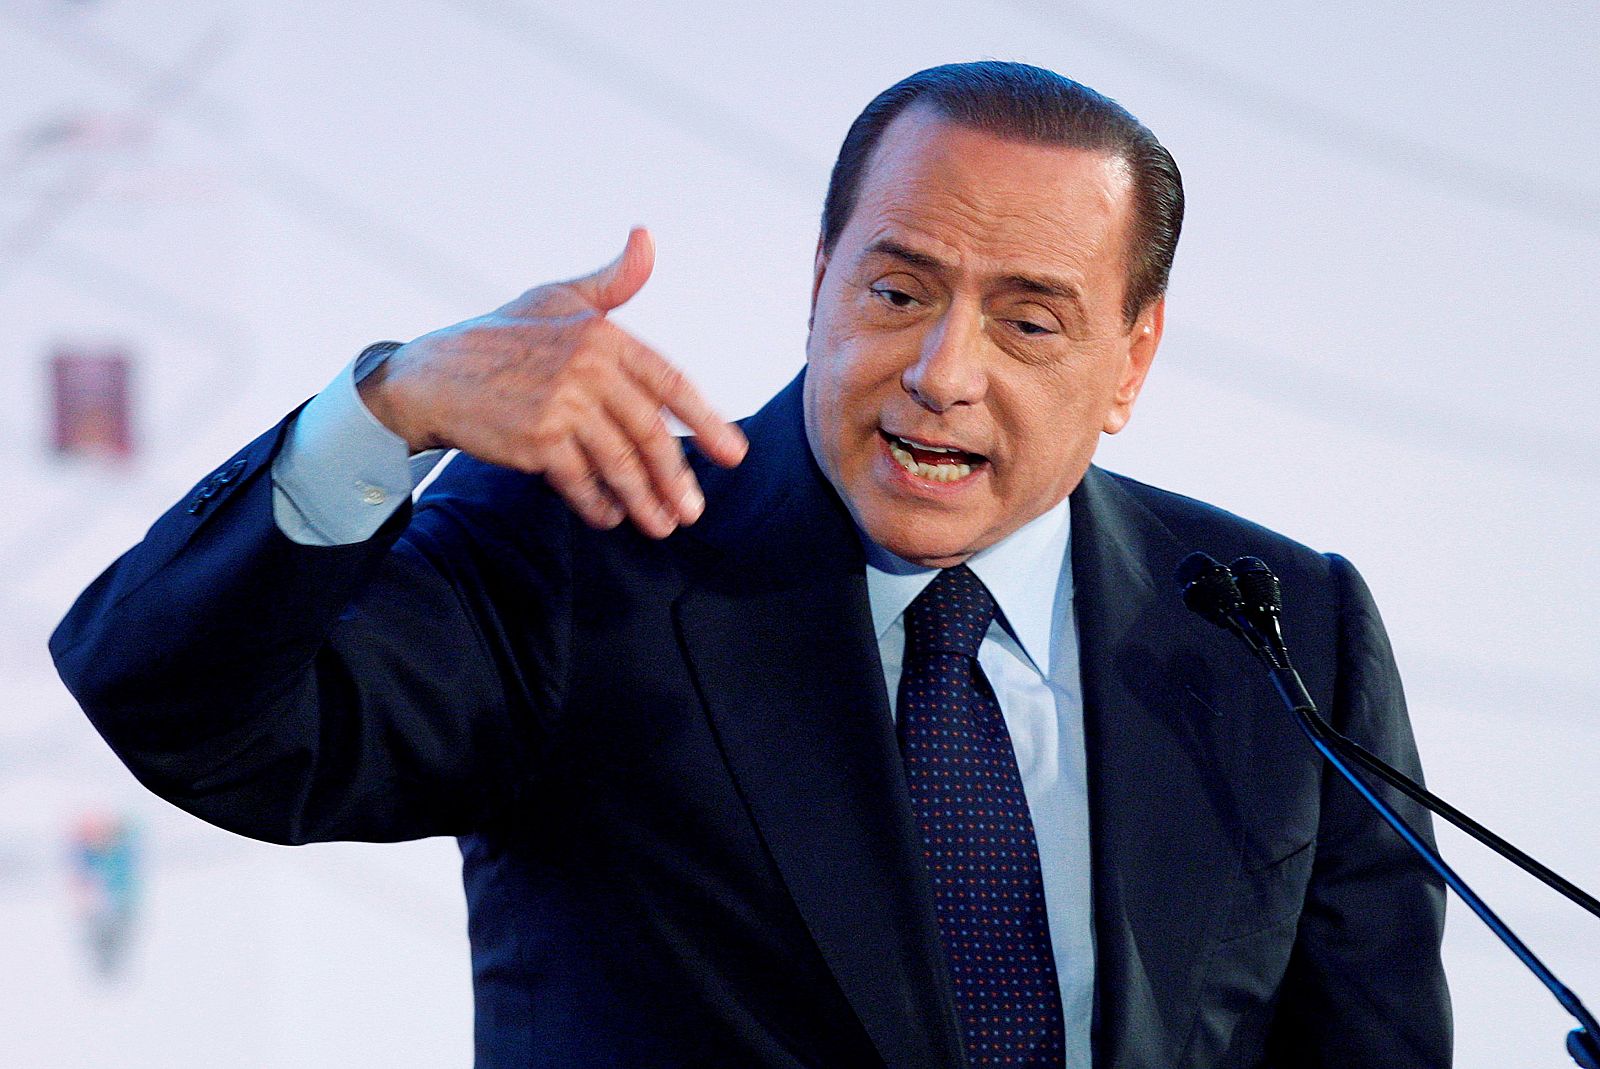 El primer ministro de Italia, Silvio Berlusconi, durante un discurso en Roma